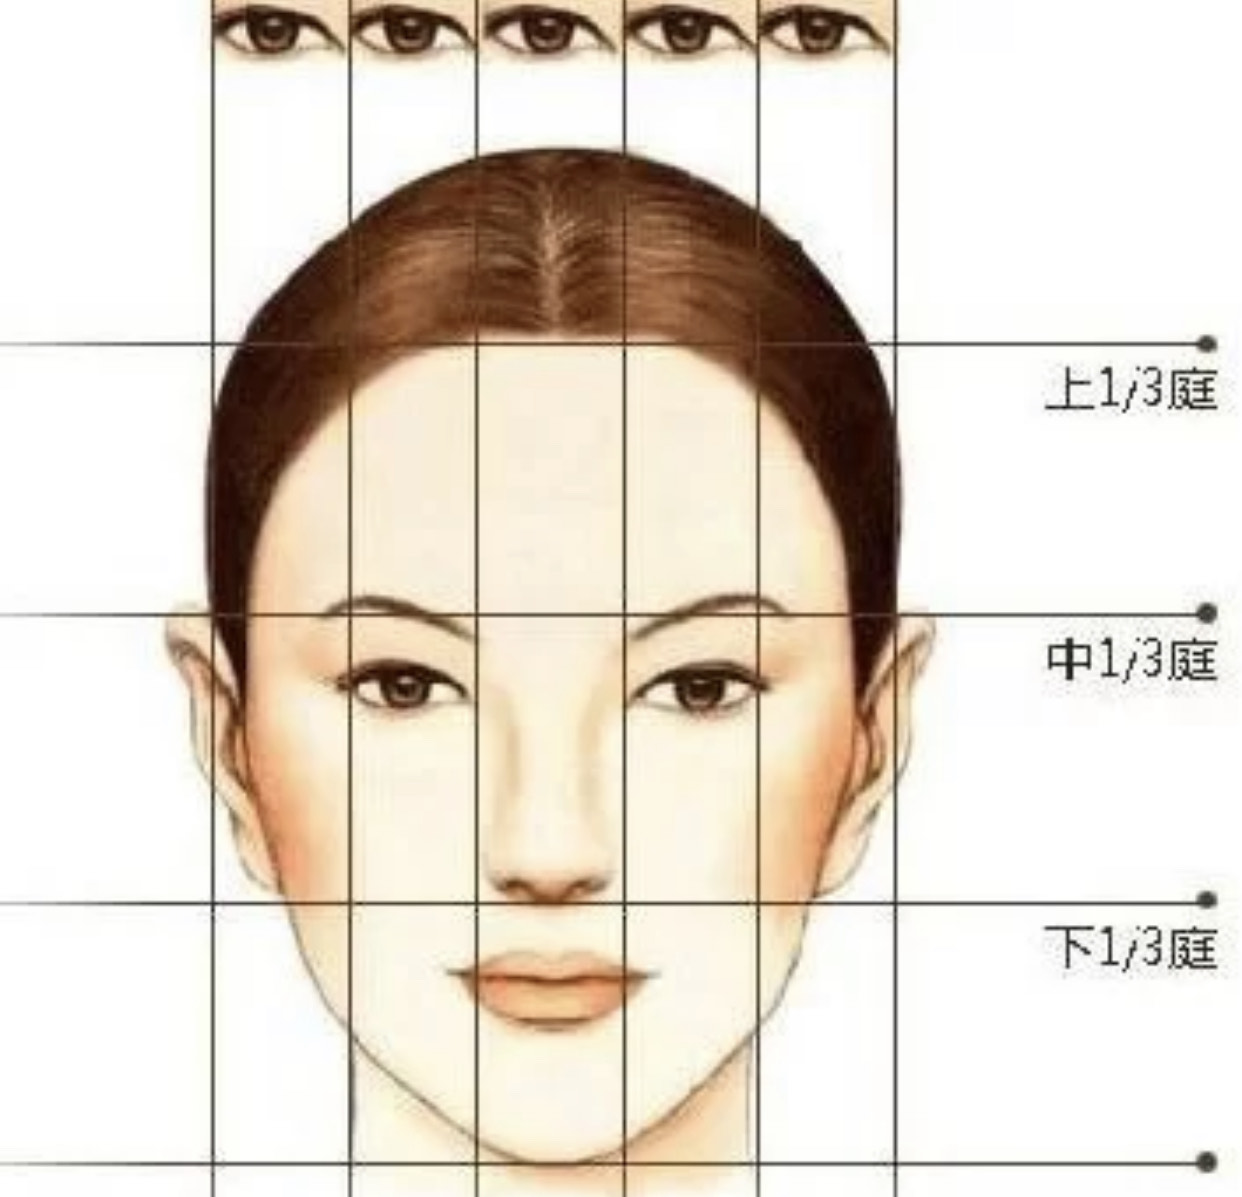 脸上线条比较流畅,但是五官很精致,这种脸型看起来给人一种很舒服的